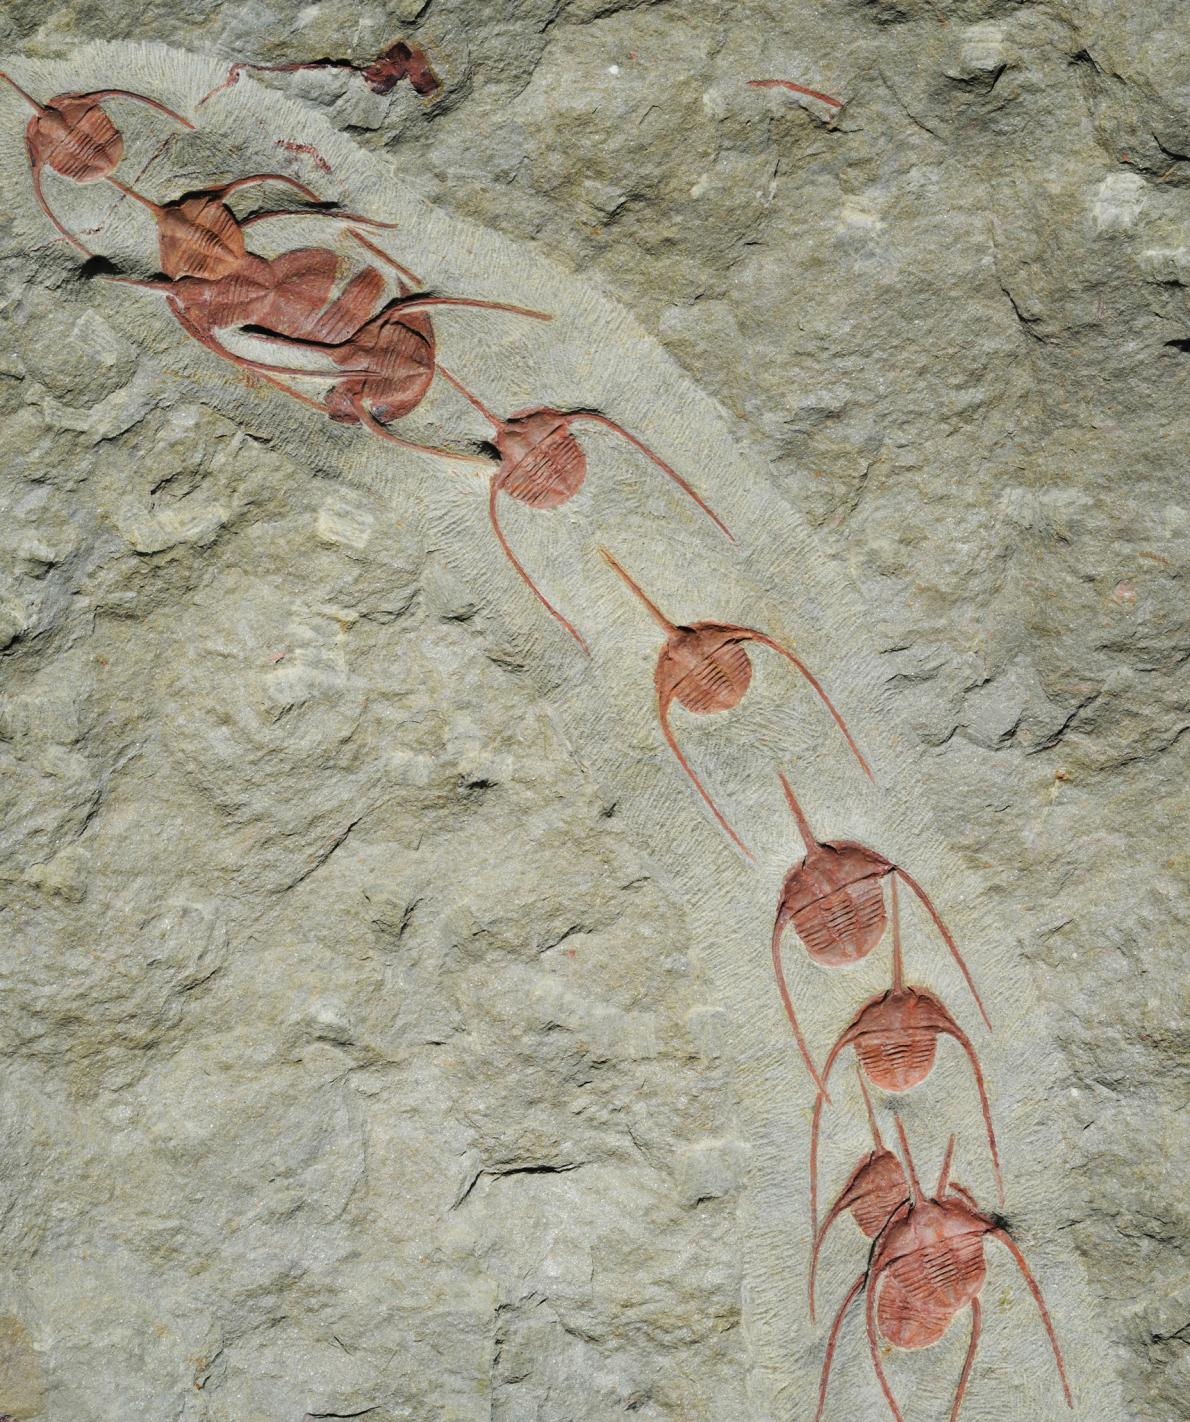 新發現的古頭帶蟲屬（<i>Ampyx</i>）三葉蟲化石證實這種遠古海洋生物會集結成線狀群集，目的可能是為了遷徙或交配。PHOTOGRAPH BY JEAN VANNIER, UNIVERSITÉ DE LYON 